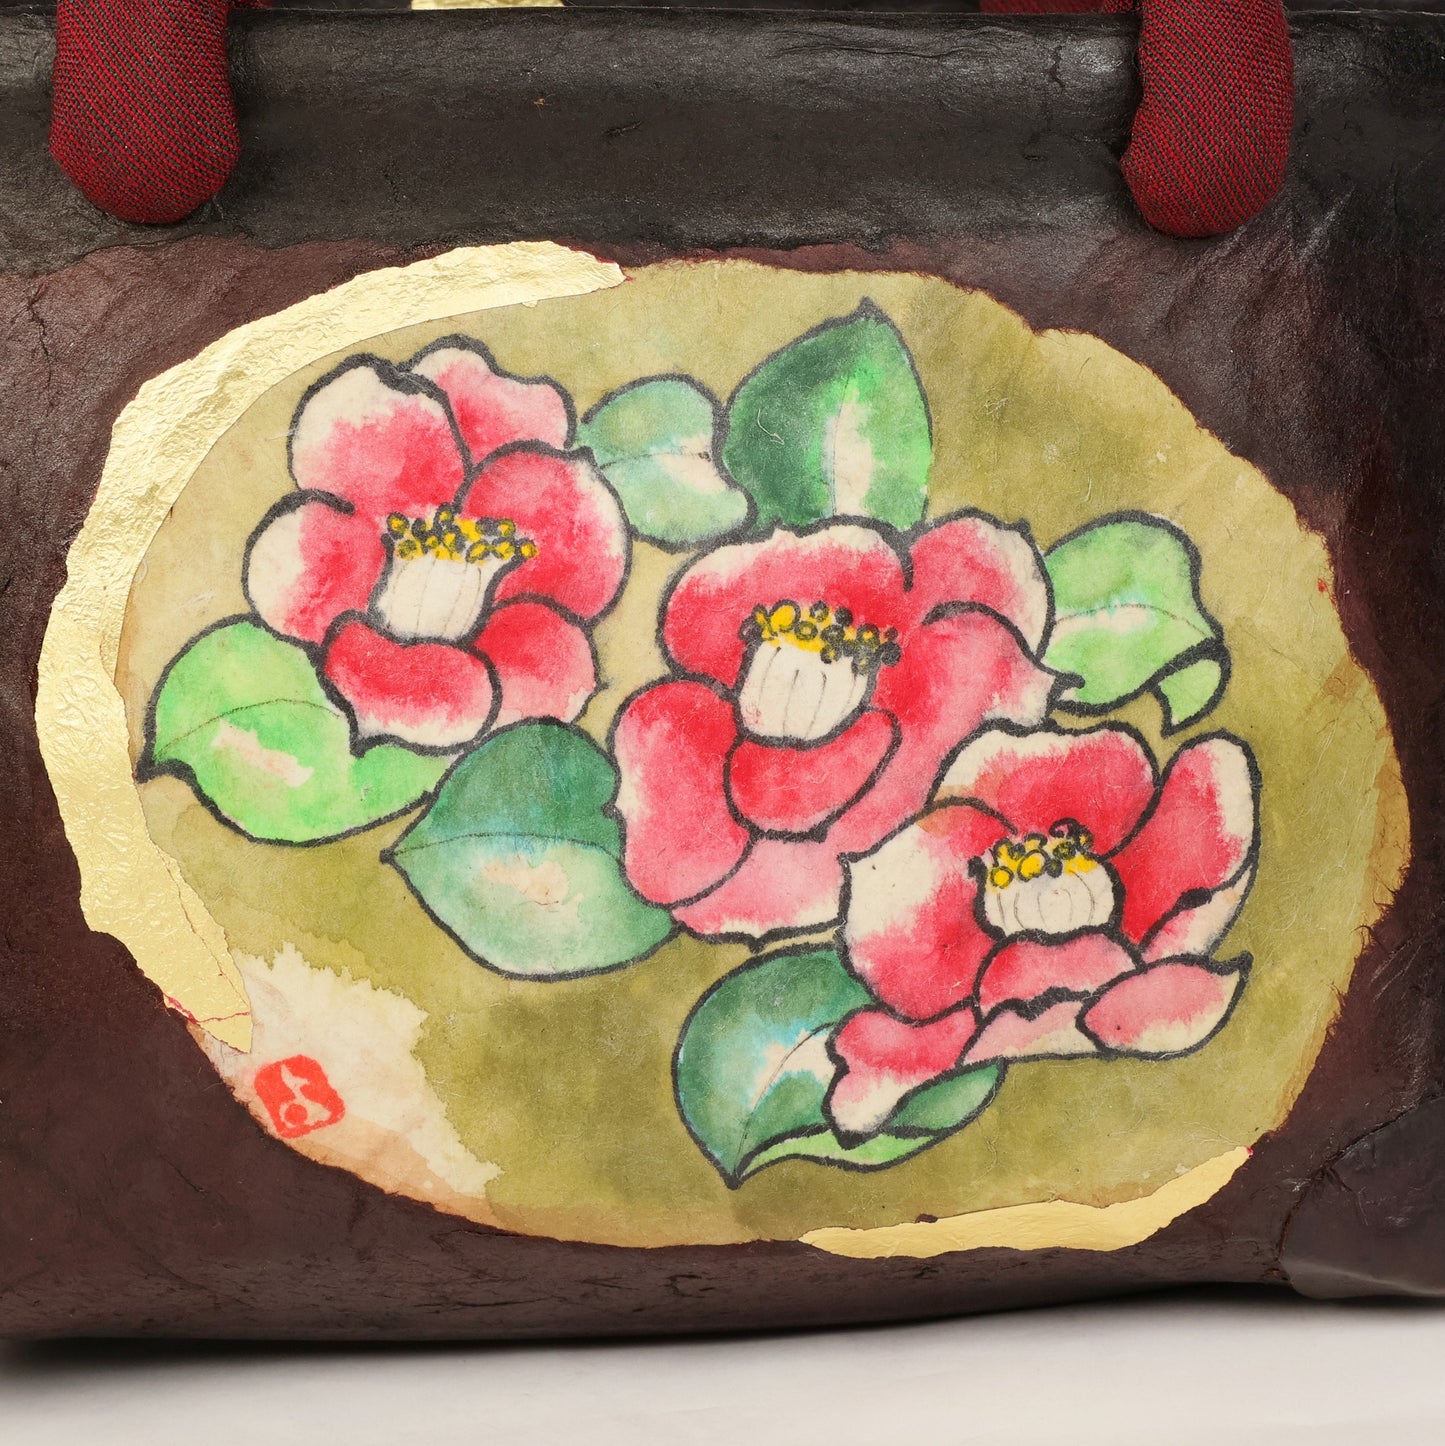 Ikkanbari, Traditional Japanese bag, Ikkanbari bag, Handmade Japanese bag, kimono bag, Japanese basket, Camellia pattern Japanese basket, Free Shipping